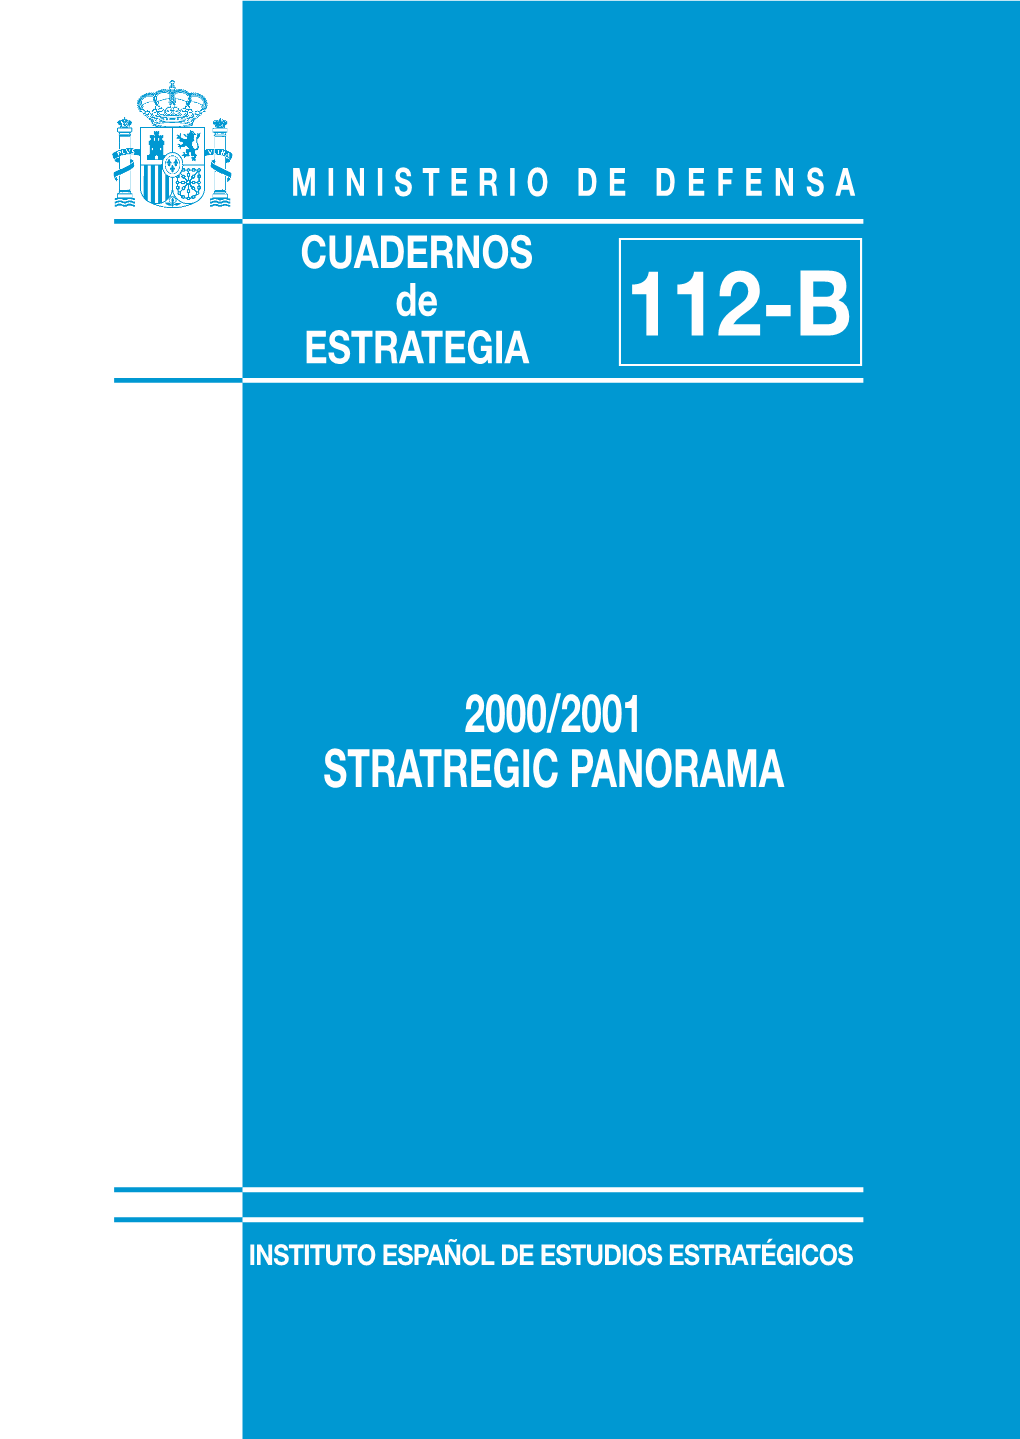 2000/2001 Strategic Panorama